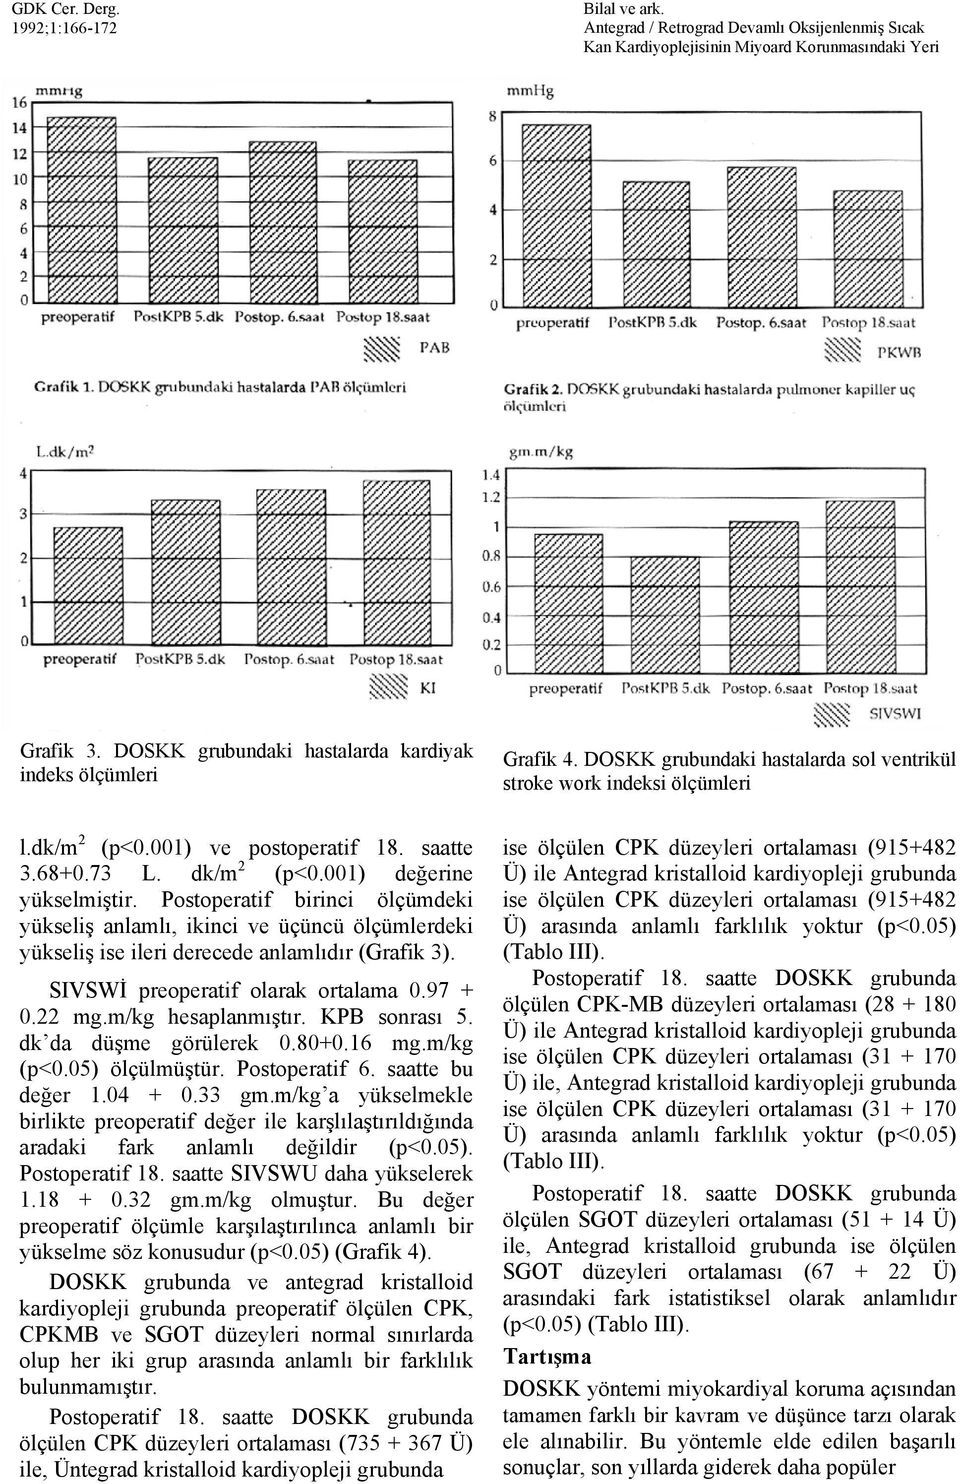 SIVSWİ preoperatif olarak ortalama 0.97 + 0.22 mg.m/kg hesaplanmıştır. KPB sonrası 5. dk da düşme görülerek 0.80+0.16 mg.m/kg (p<0.05) ölçülmüştür. Postoperatif 6. saatte bu değer 1.04 + 0.33 gm.